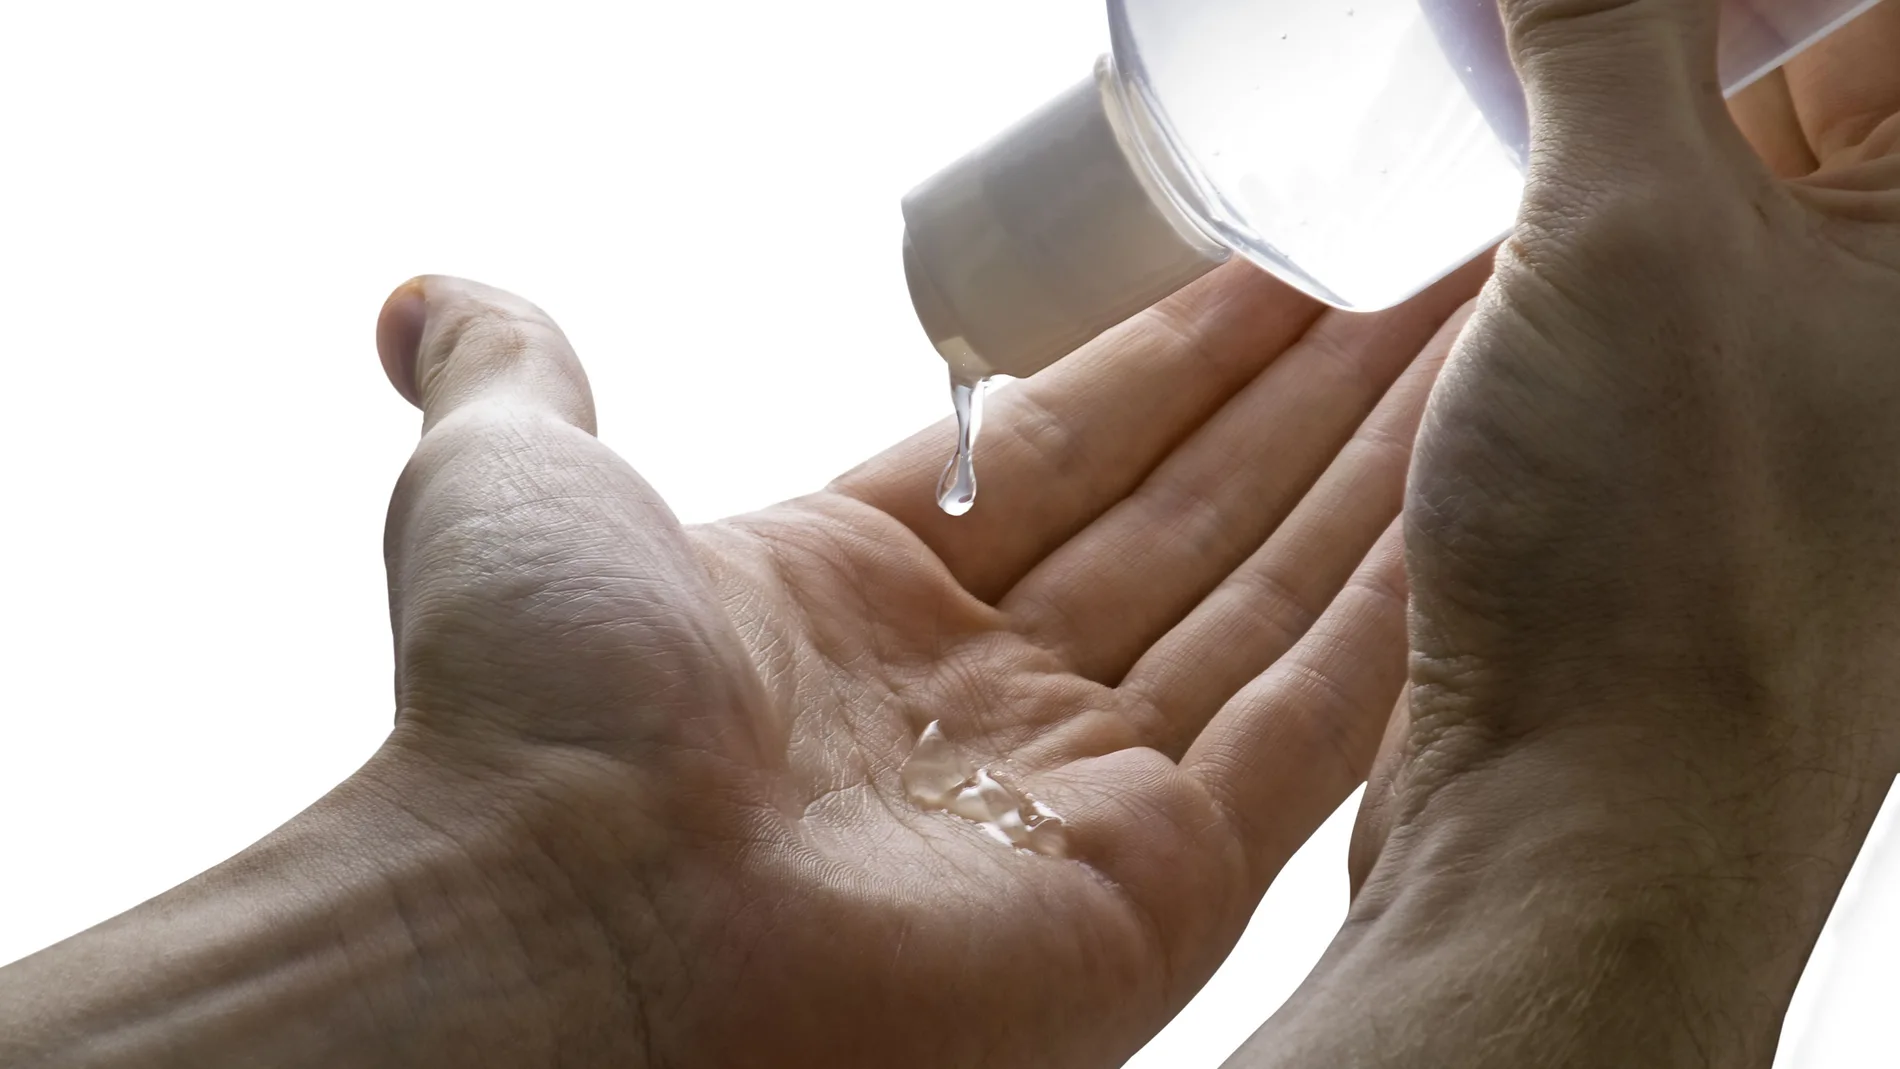 Persona limpiándose las manos con gel hidroalcohólico